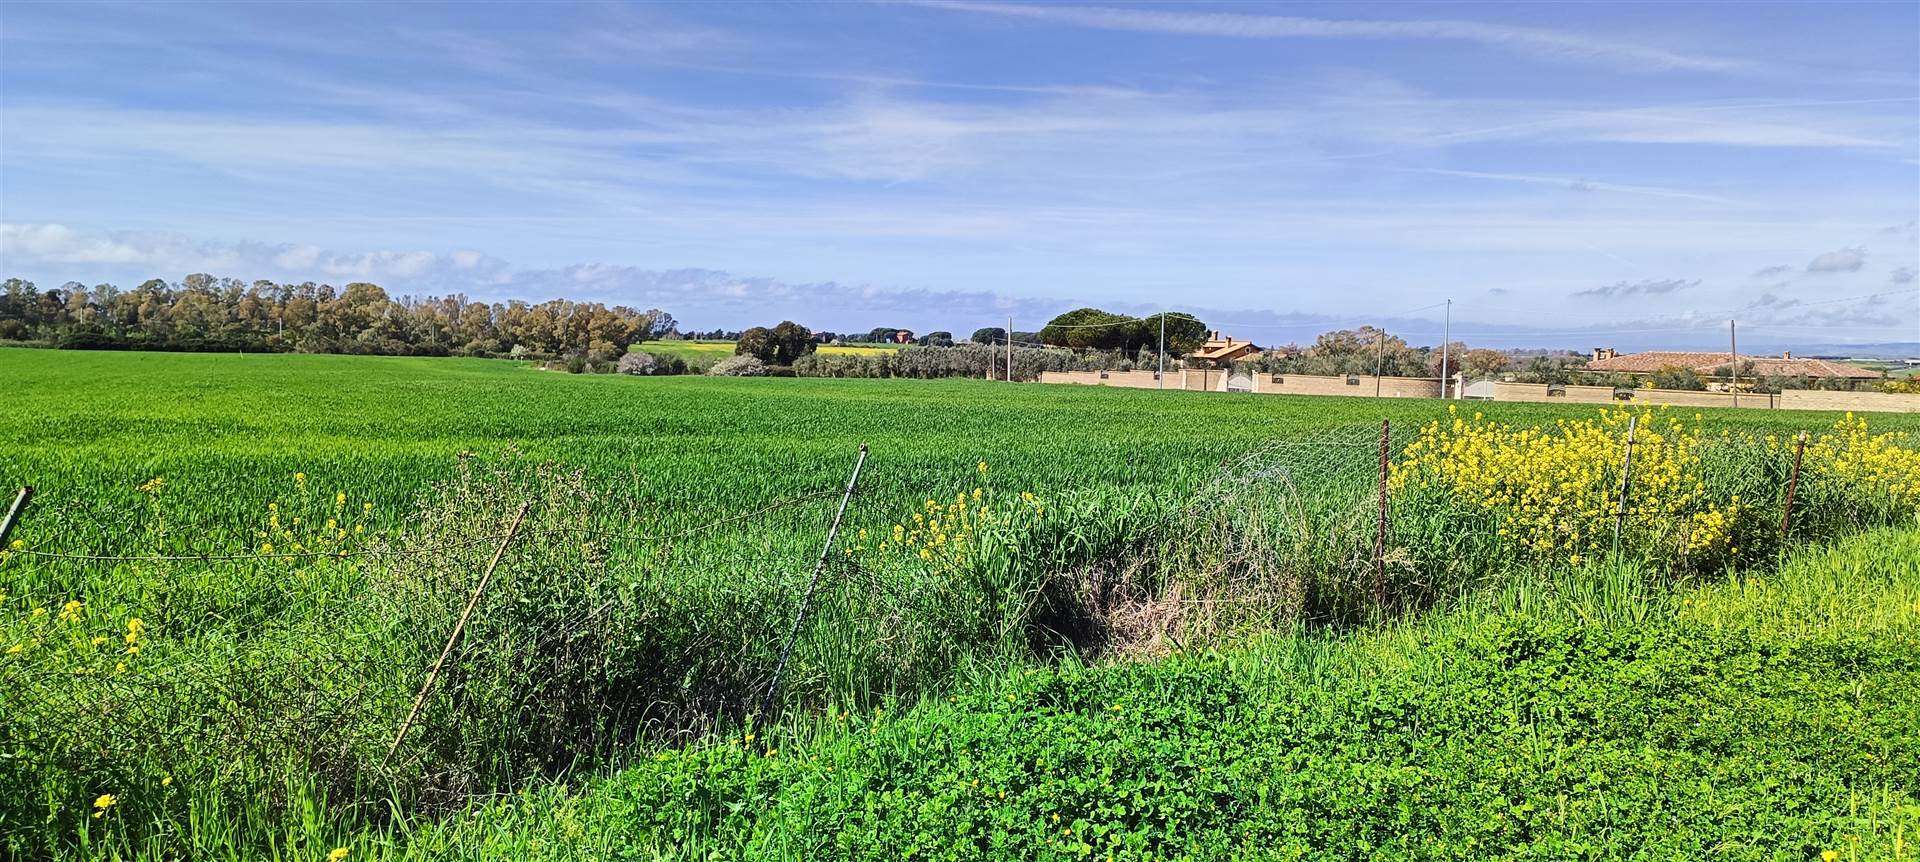 L'Immobiliare Bertini propone in vendita a Civitavecchia, Terreno Agricolo di 10 ettari vicino zona Industriale adiacente il Porto di Civitavecchia 